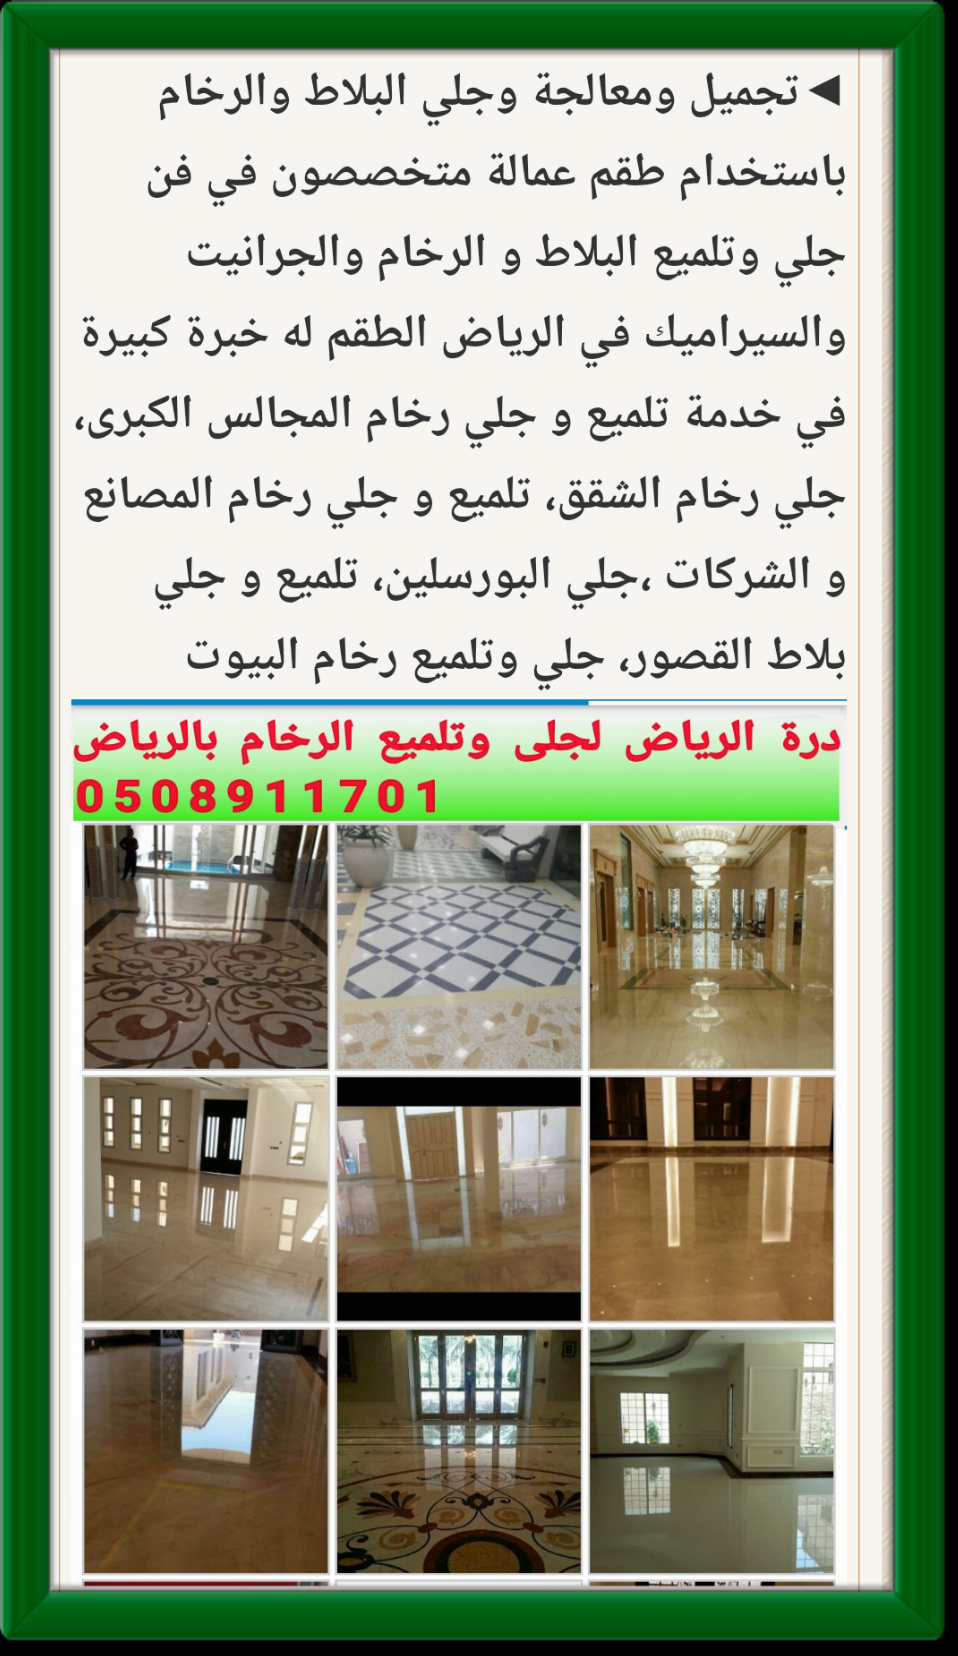 شركة درة الرياض شركة جلي رخام بالرياض 0508911701 جلي رخام في الرياض P_1238tonge6